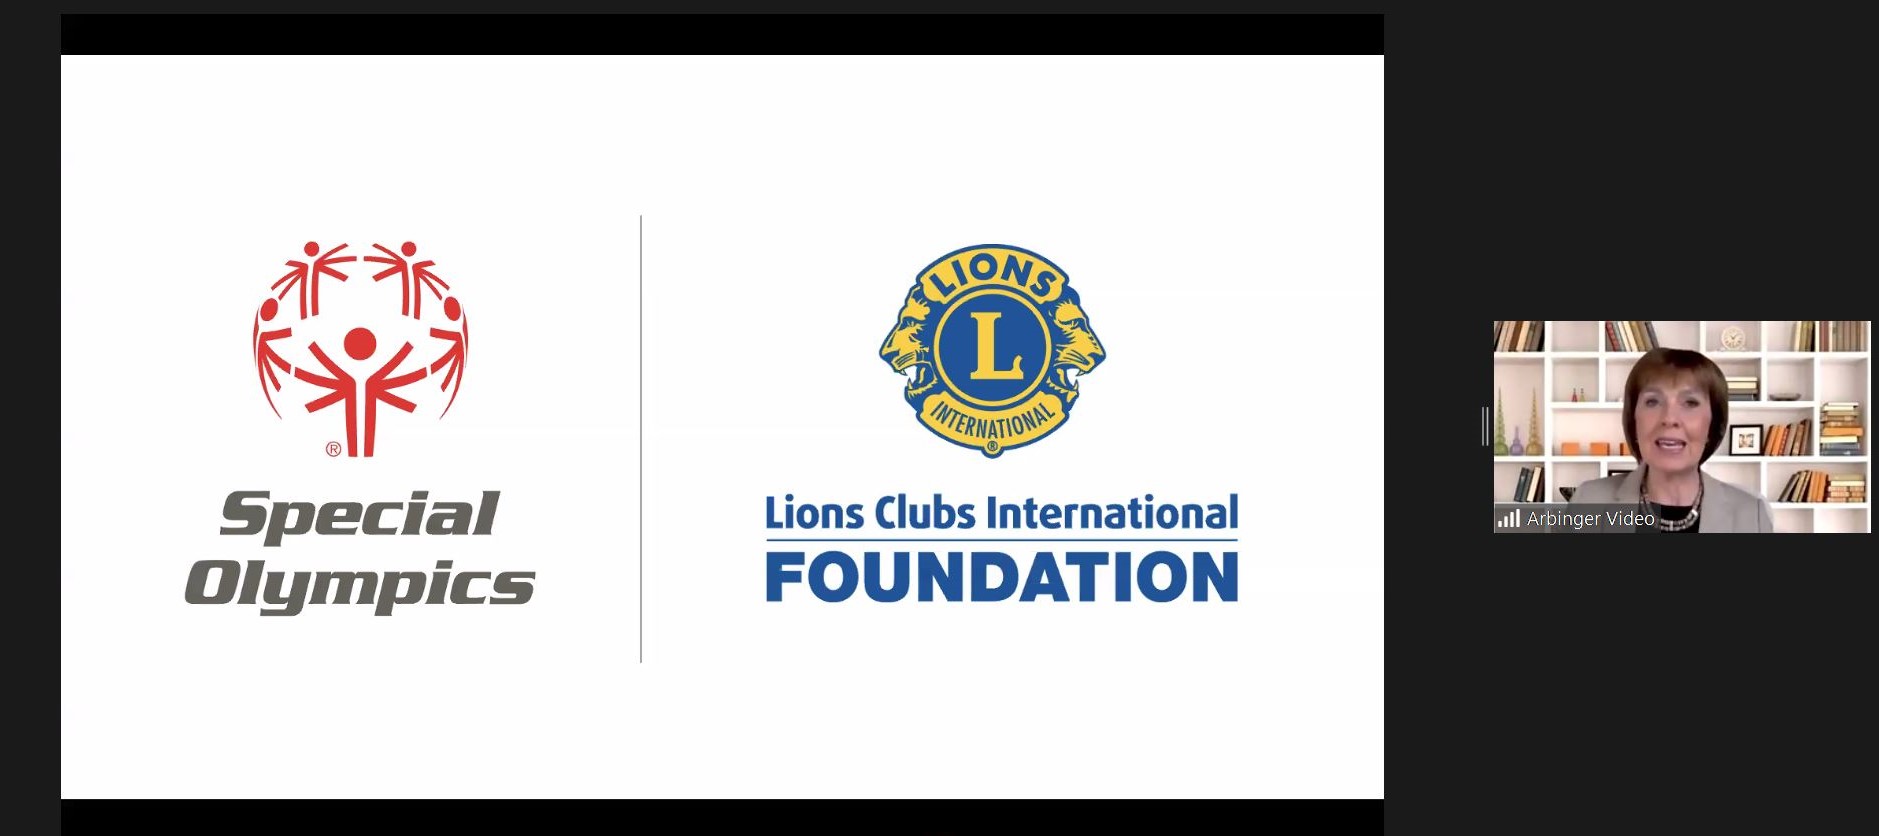 LCIF 主席古德龙•英格达德在在线 Academy for all（为所有人的学院）发言，身边是 LCIF 和特奥委会的标志。